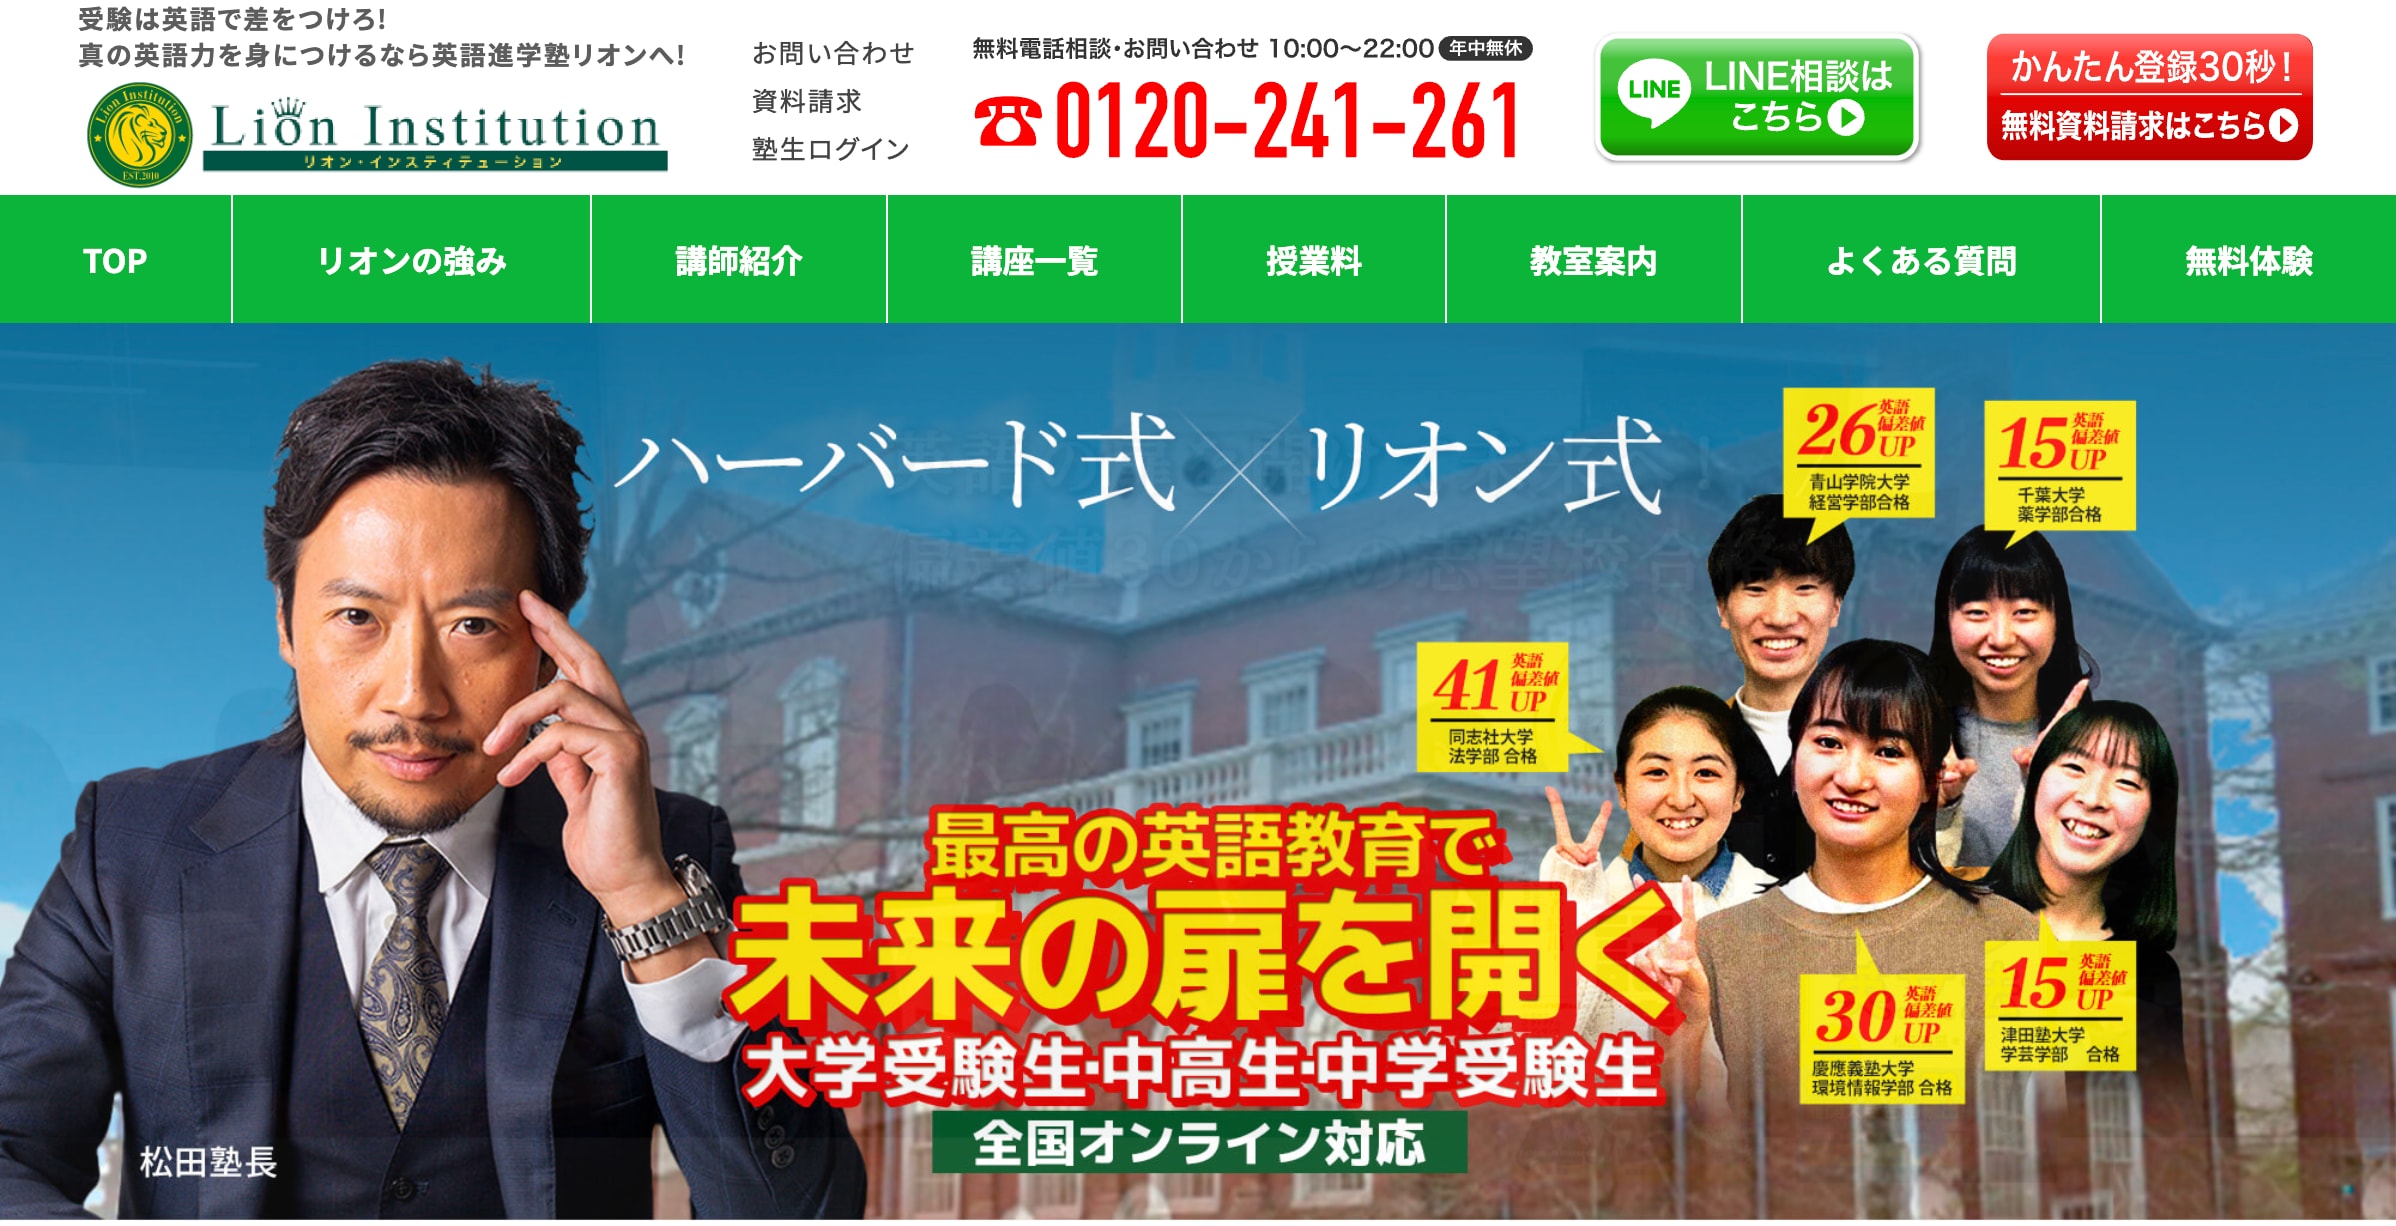 英語進学塾リオン オンラインのサイトのトップ画像